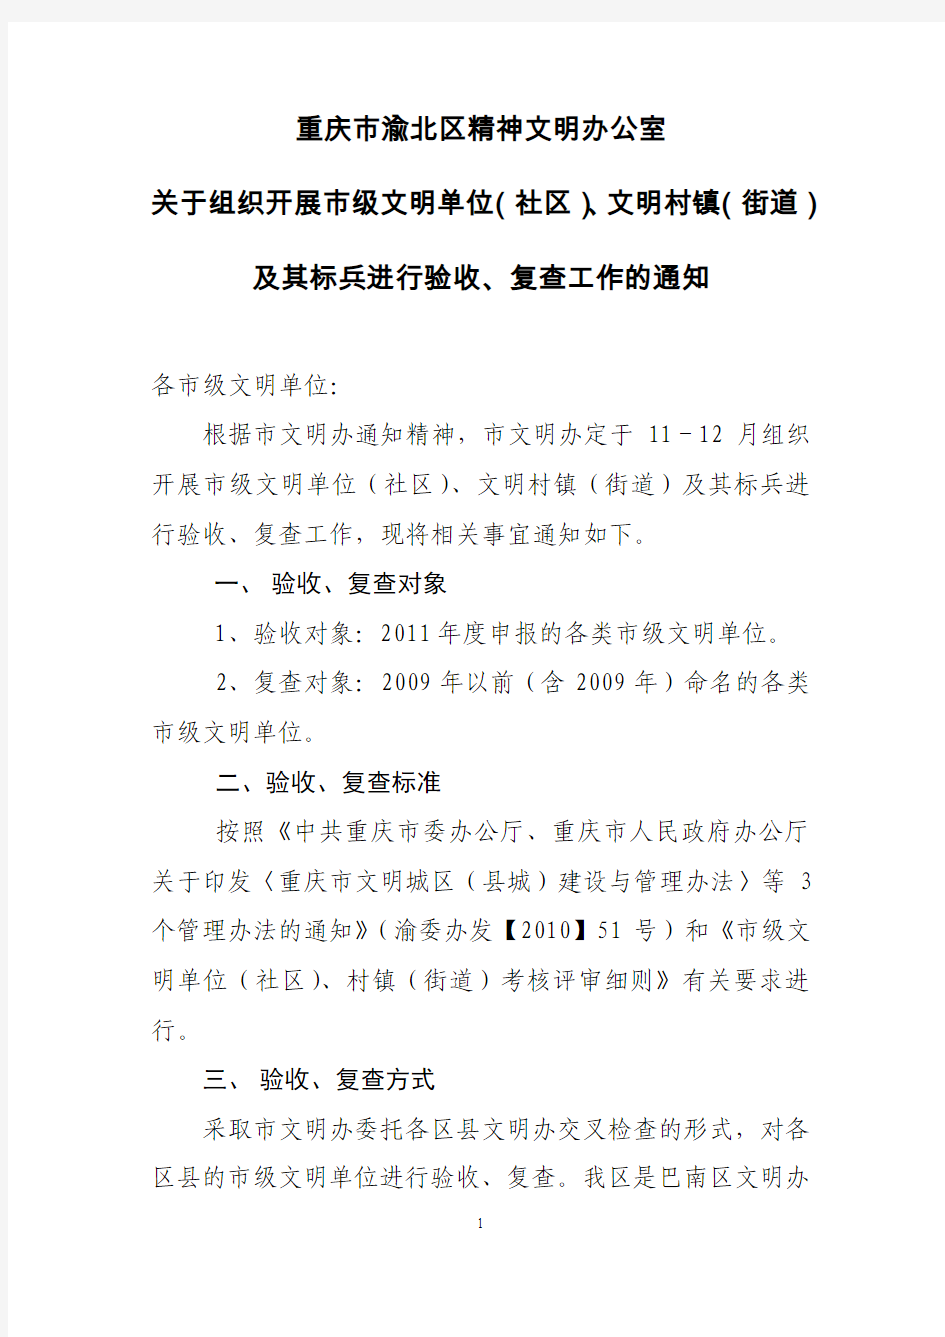 重庆市文明单位复查、验收通知